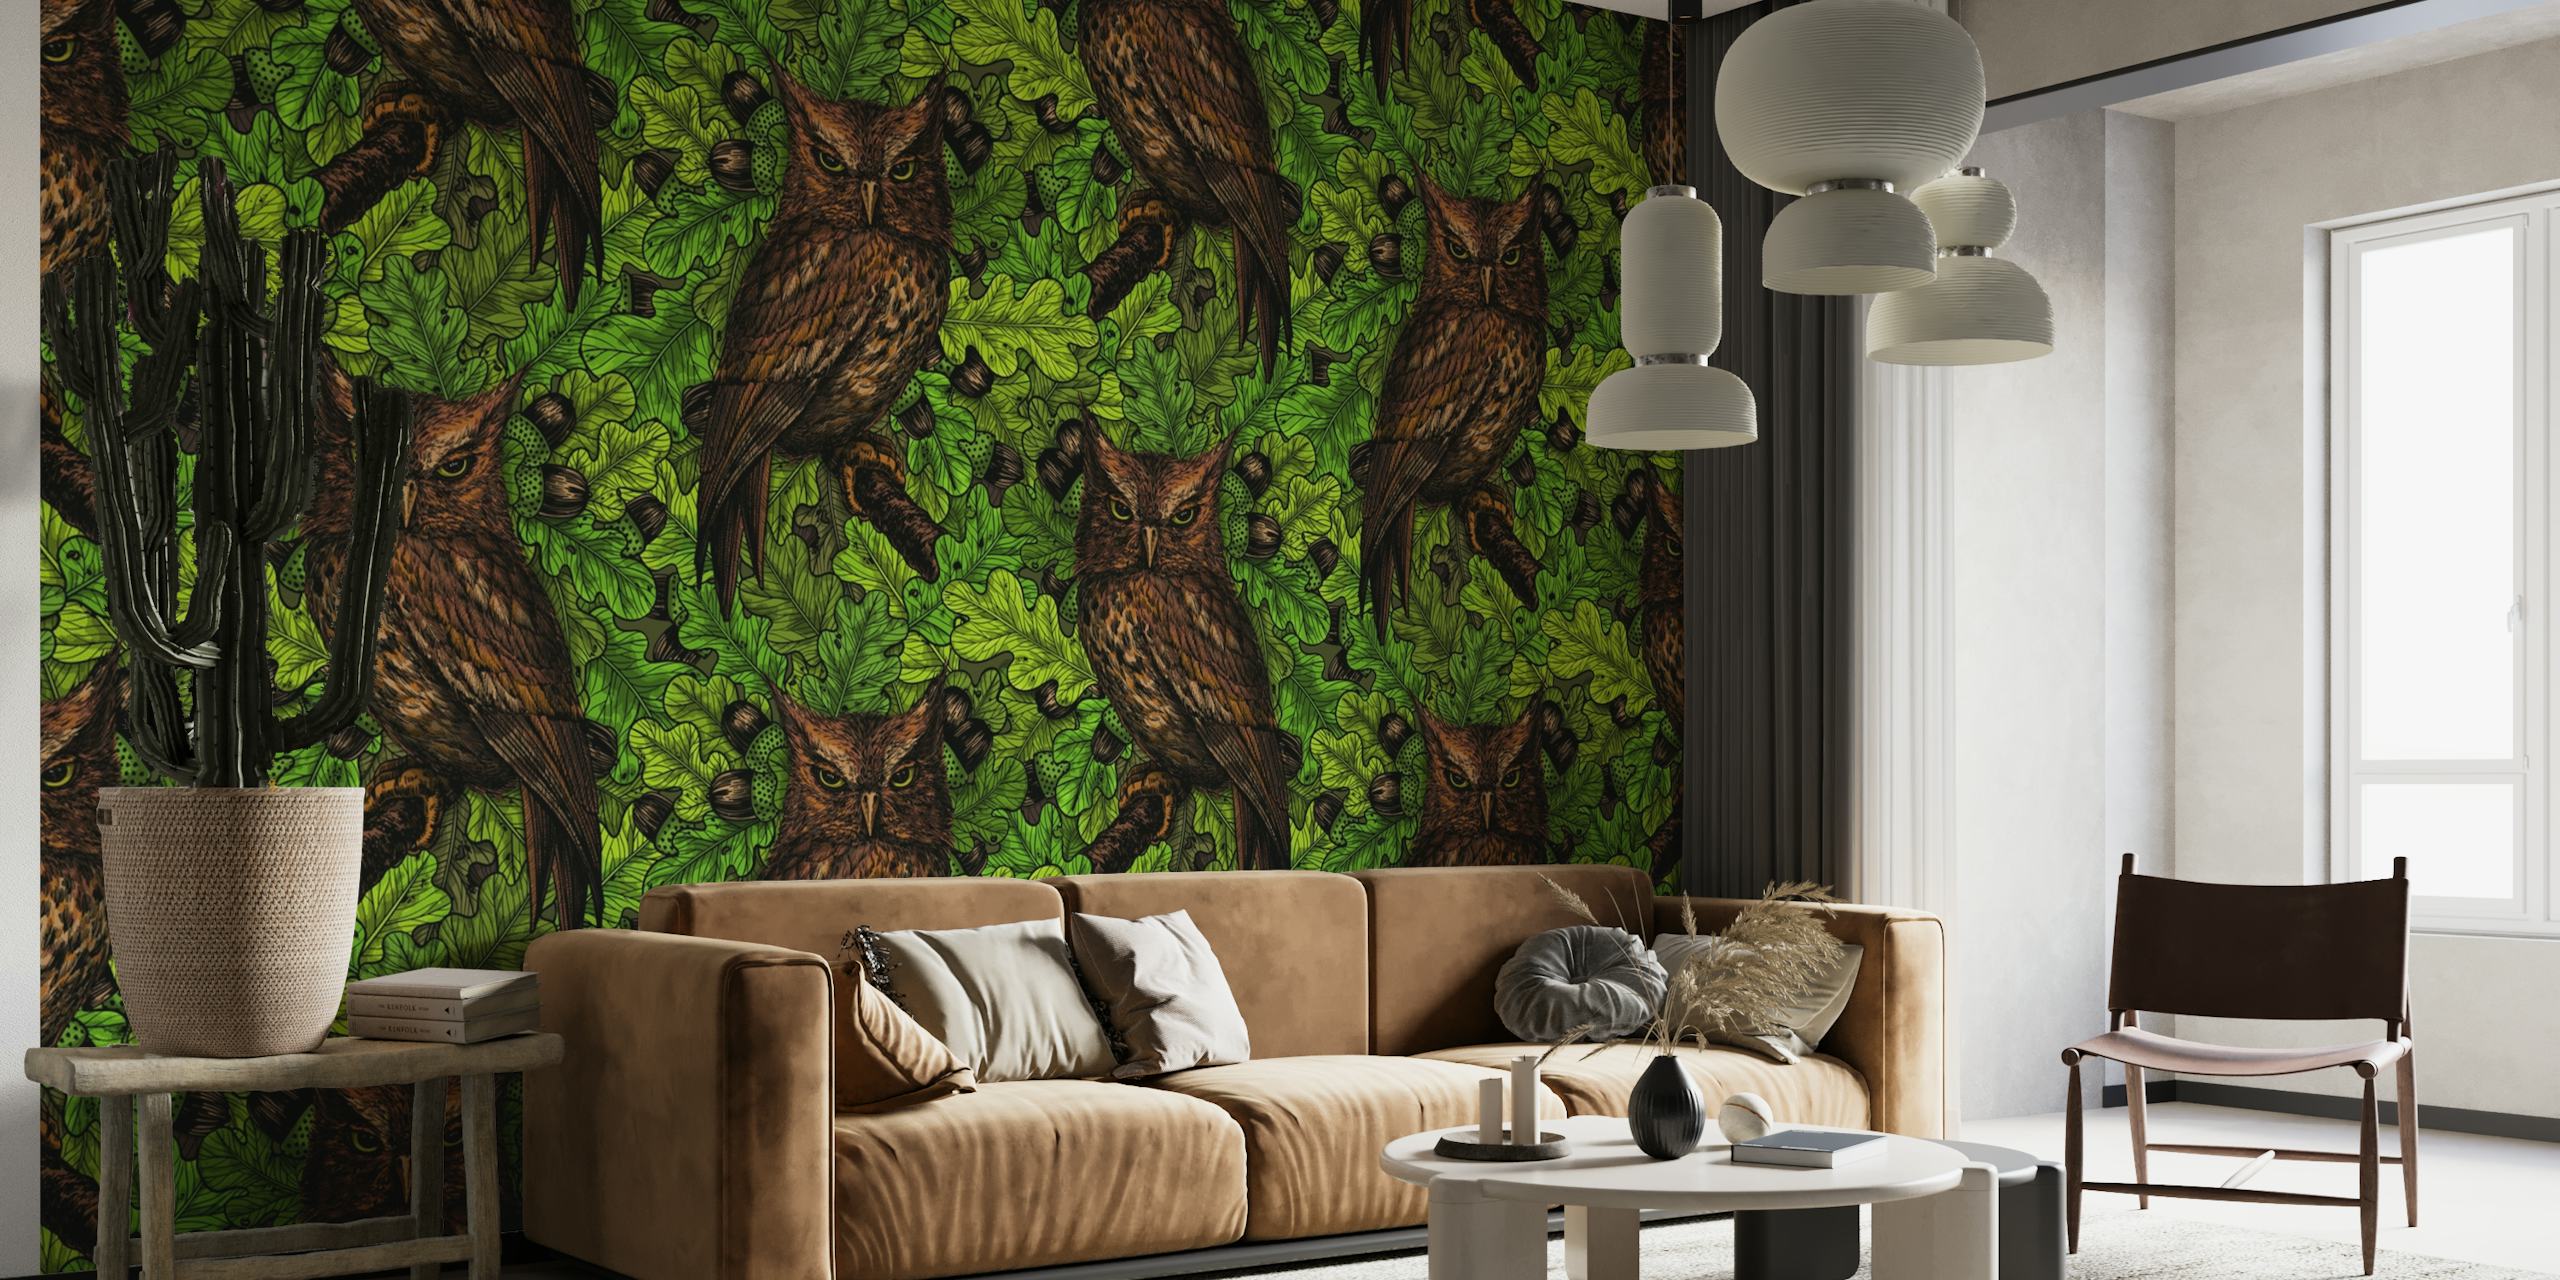 Owls in the oak tree 2 wallpaper